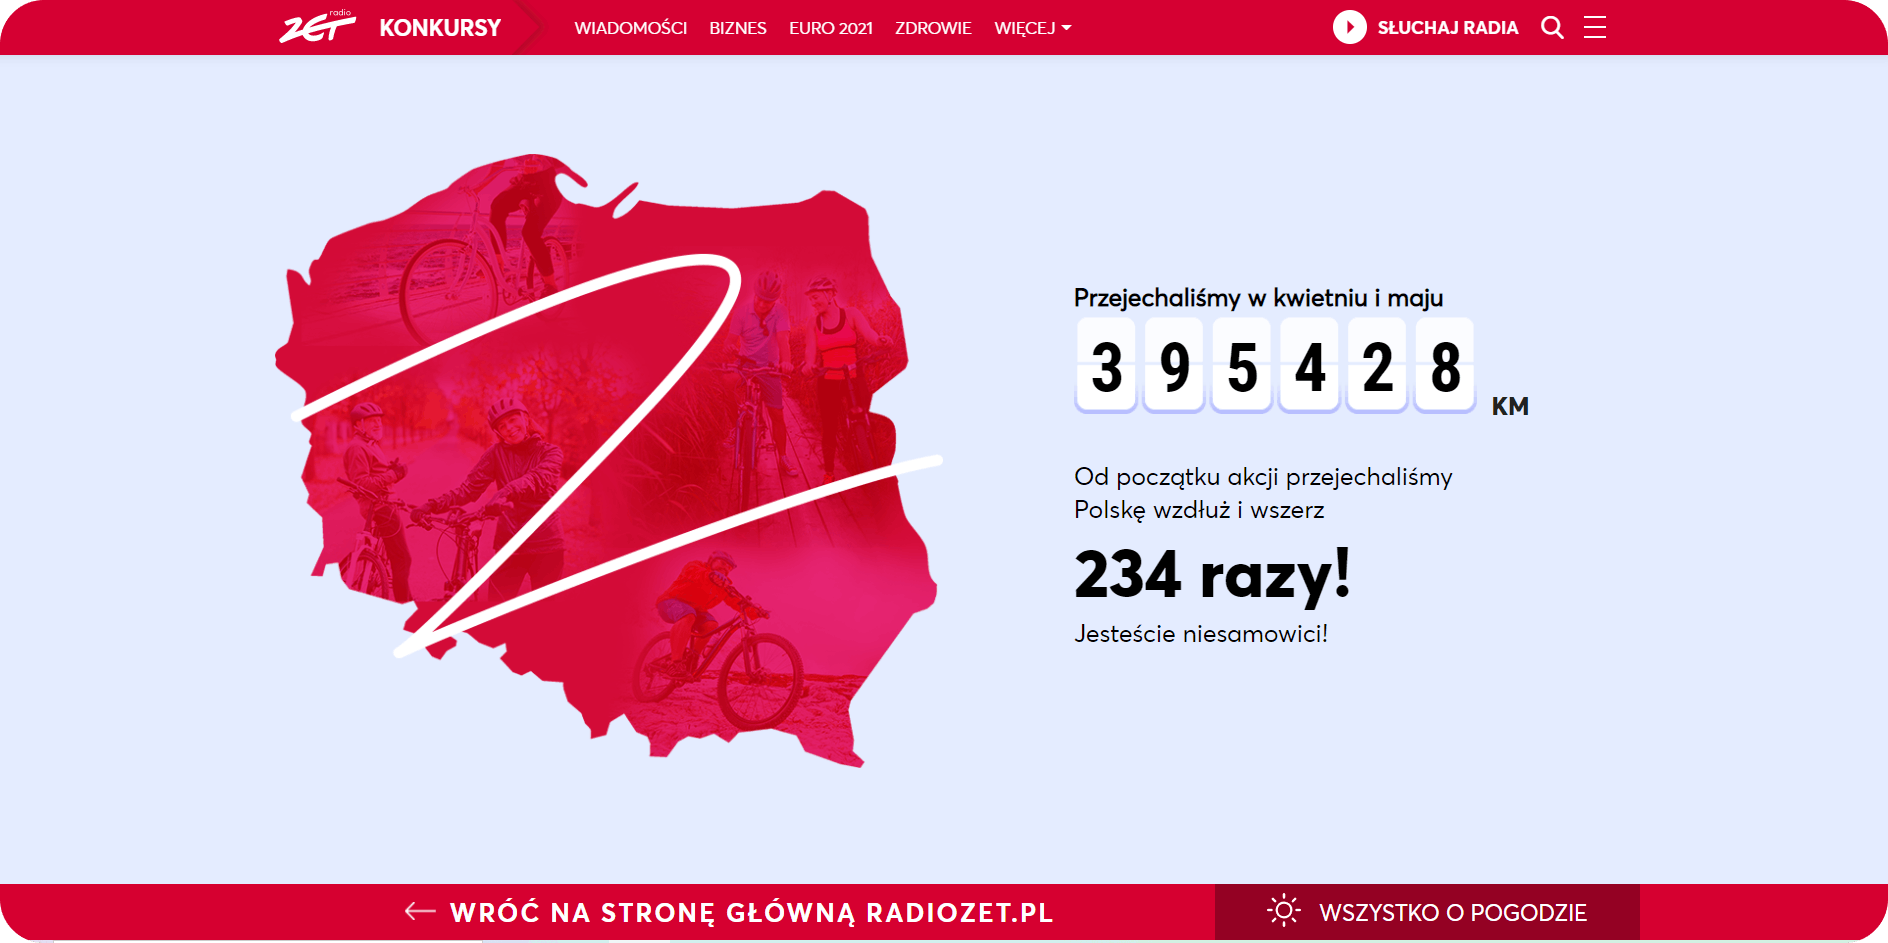 Ile razy uczestnicy wyzwania okrążyli Polskę?